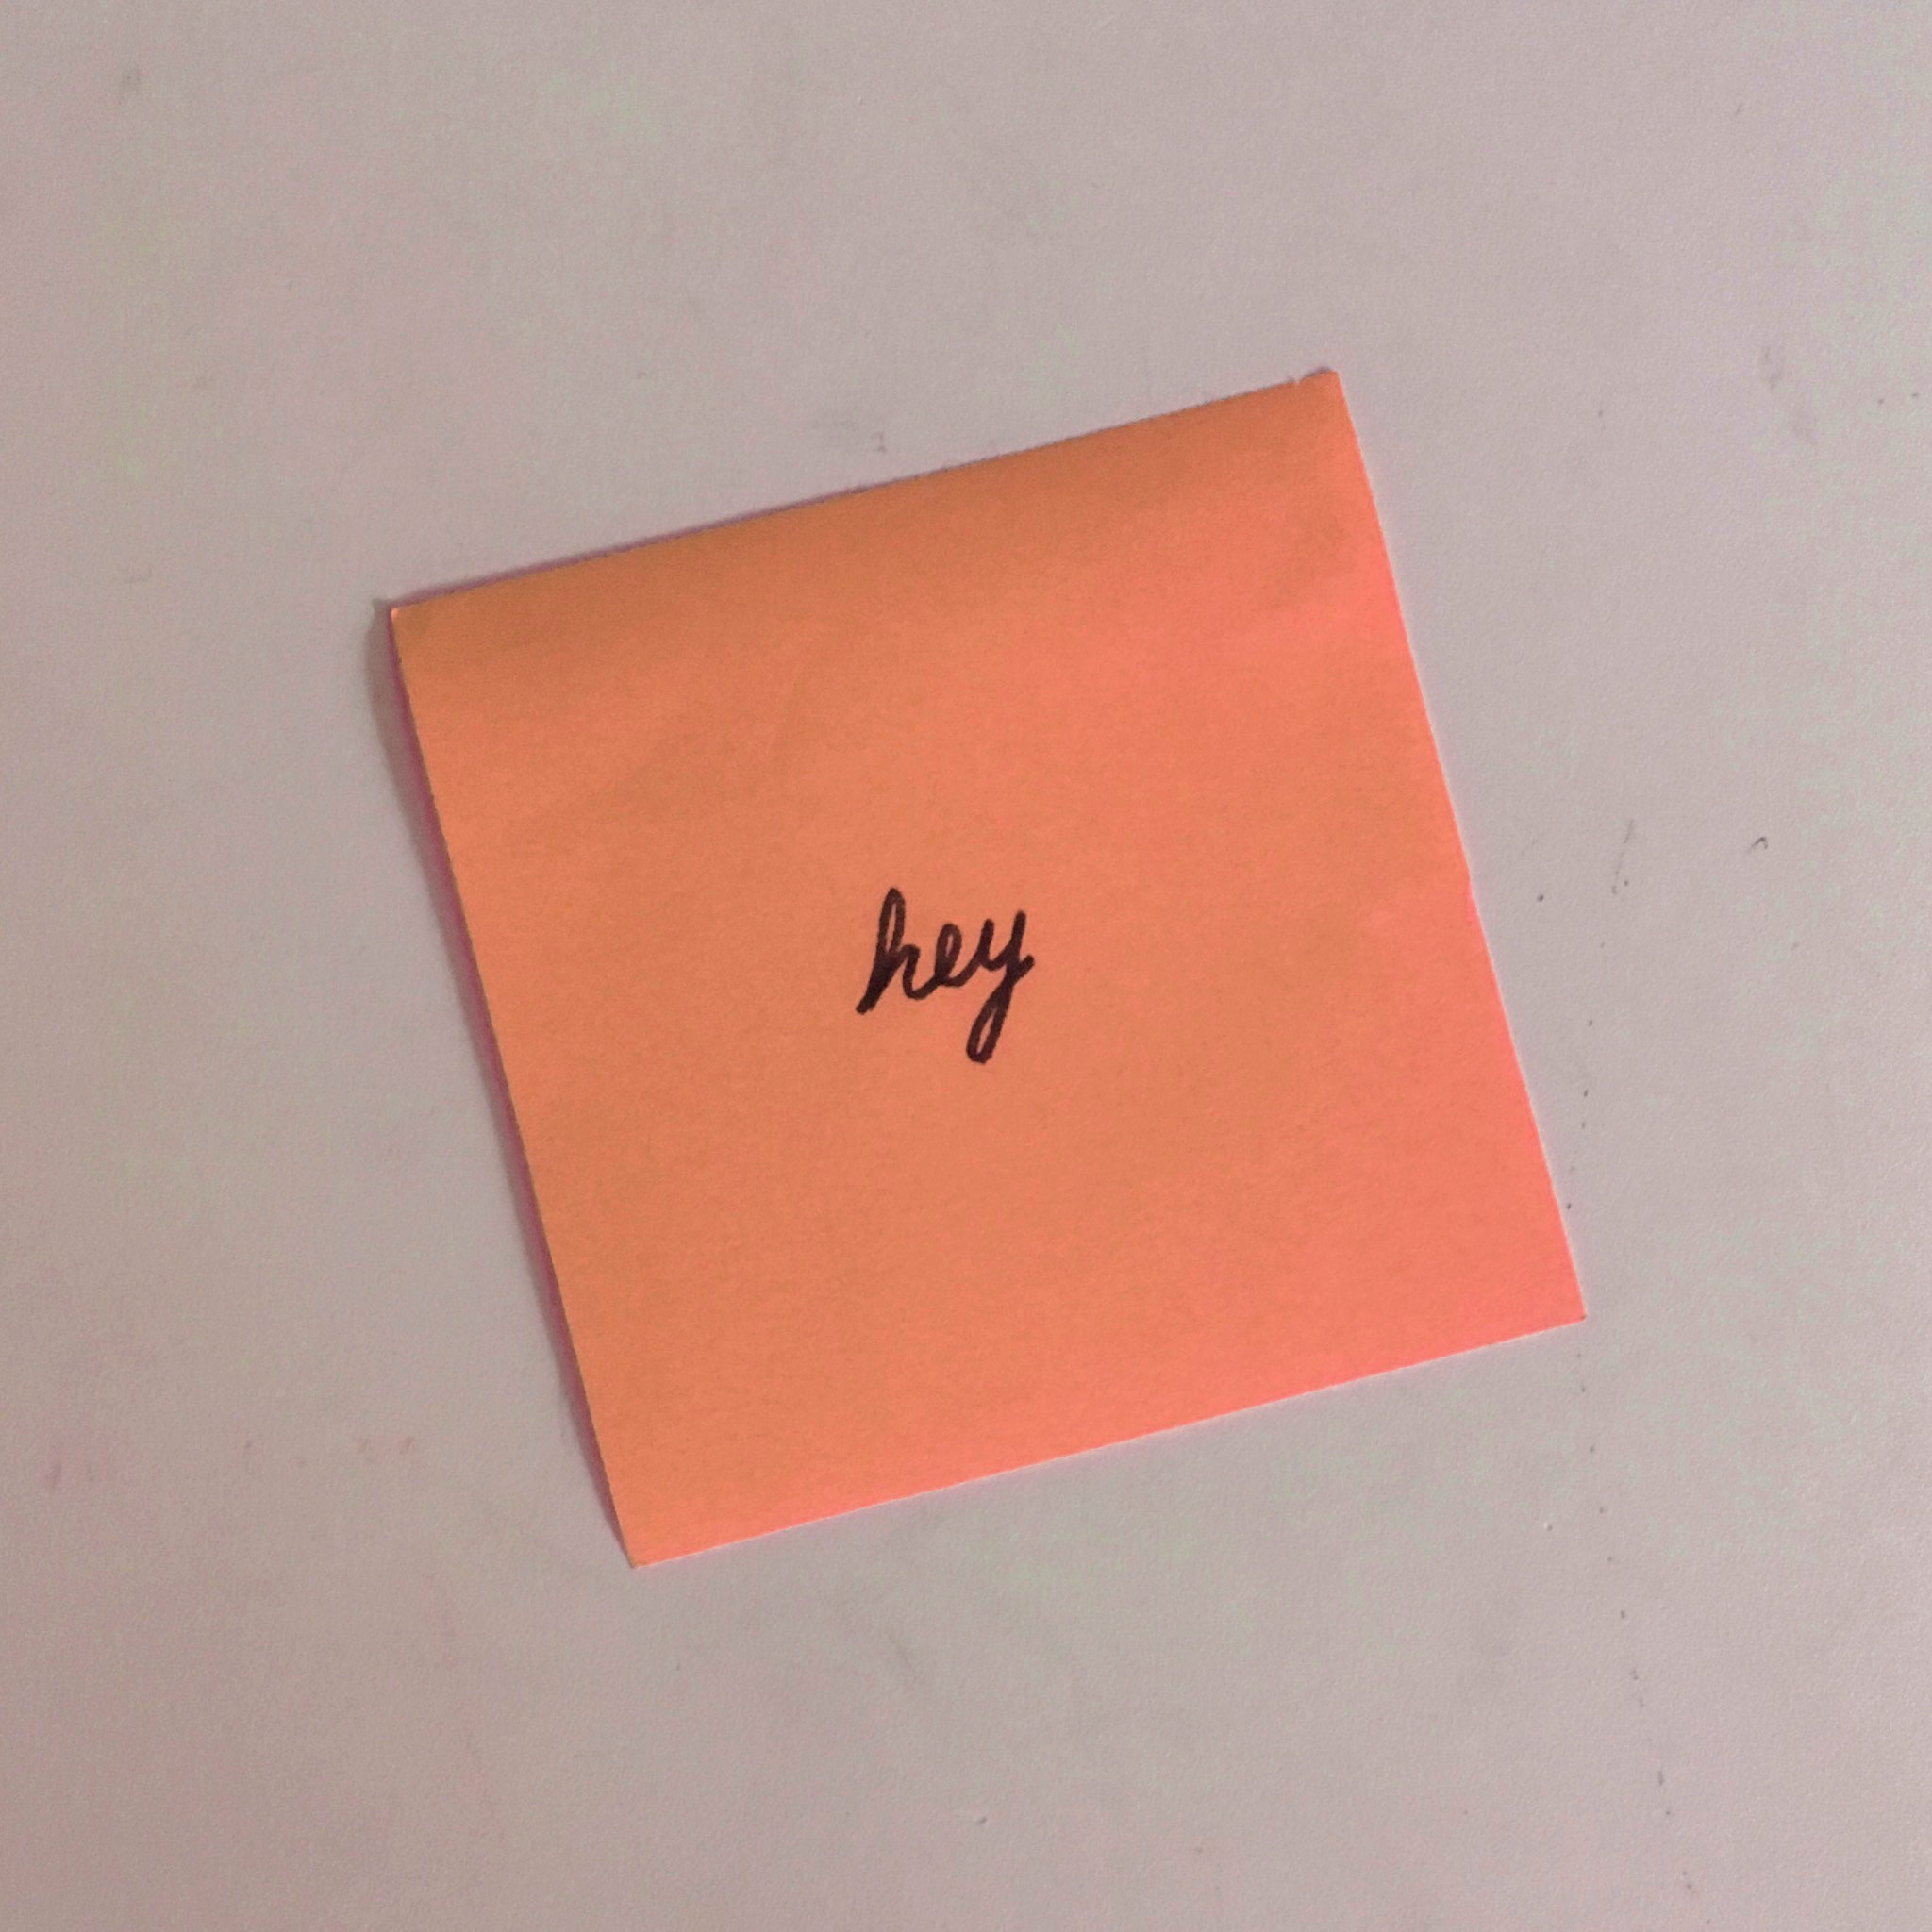 'Hey' sticky note